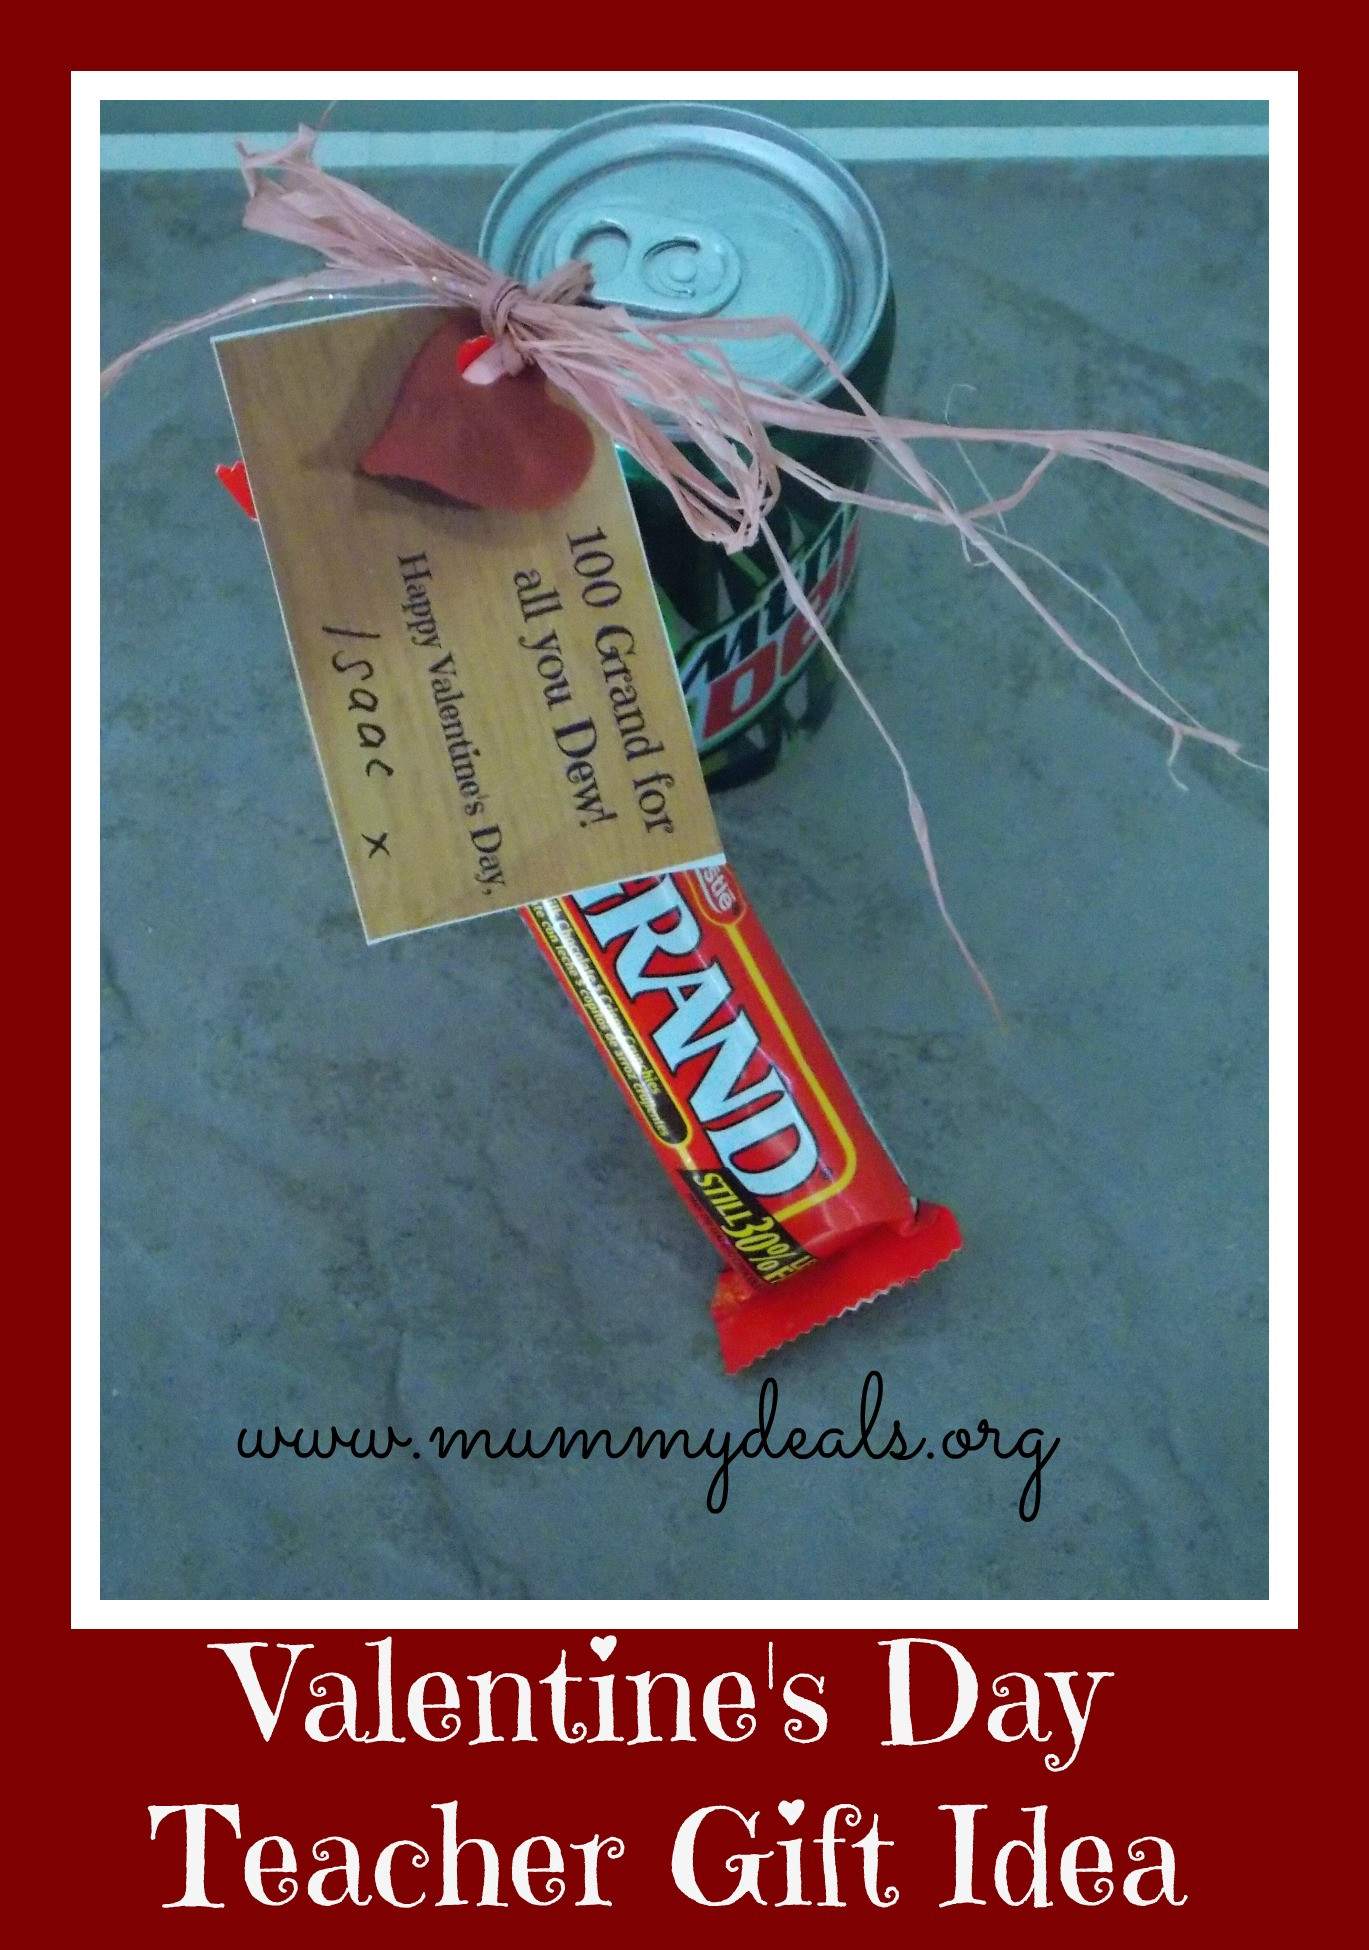 Valentine Teacher Gift Ideas
 6 Valentine s Day Teacher Gift Ideas Mummy Deals